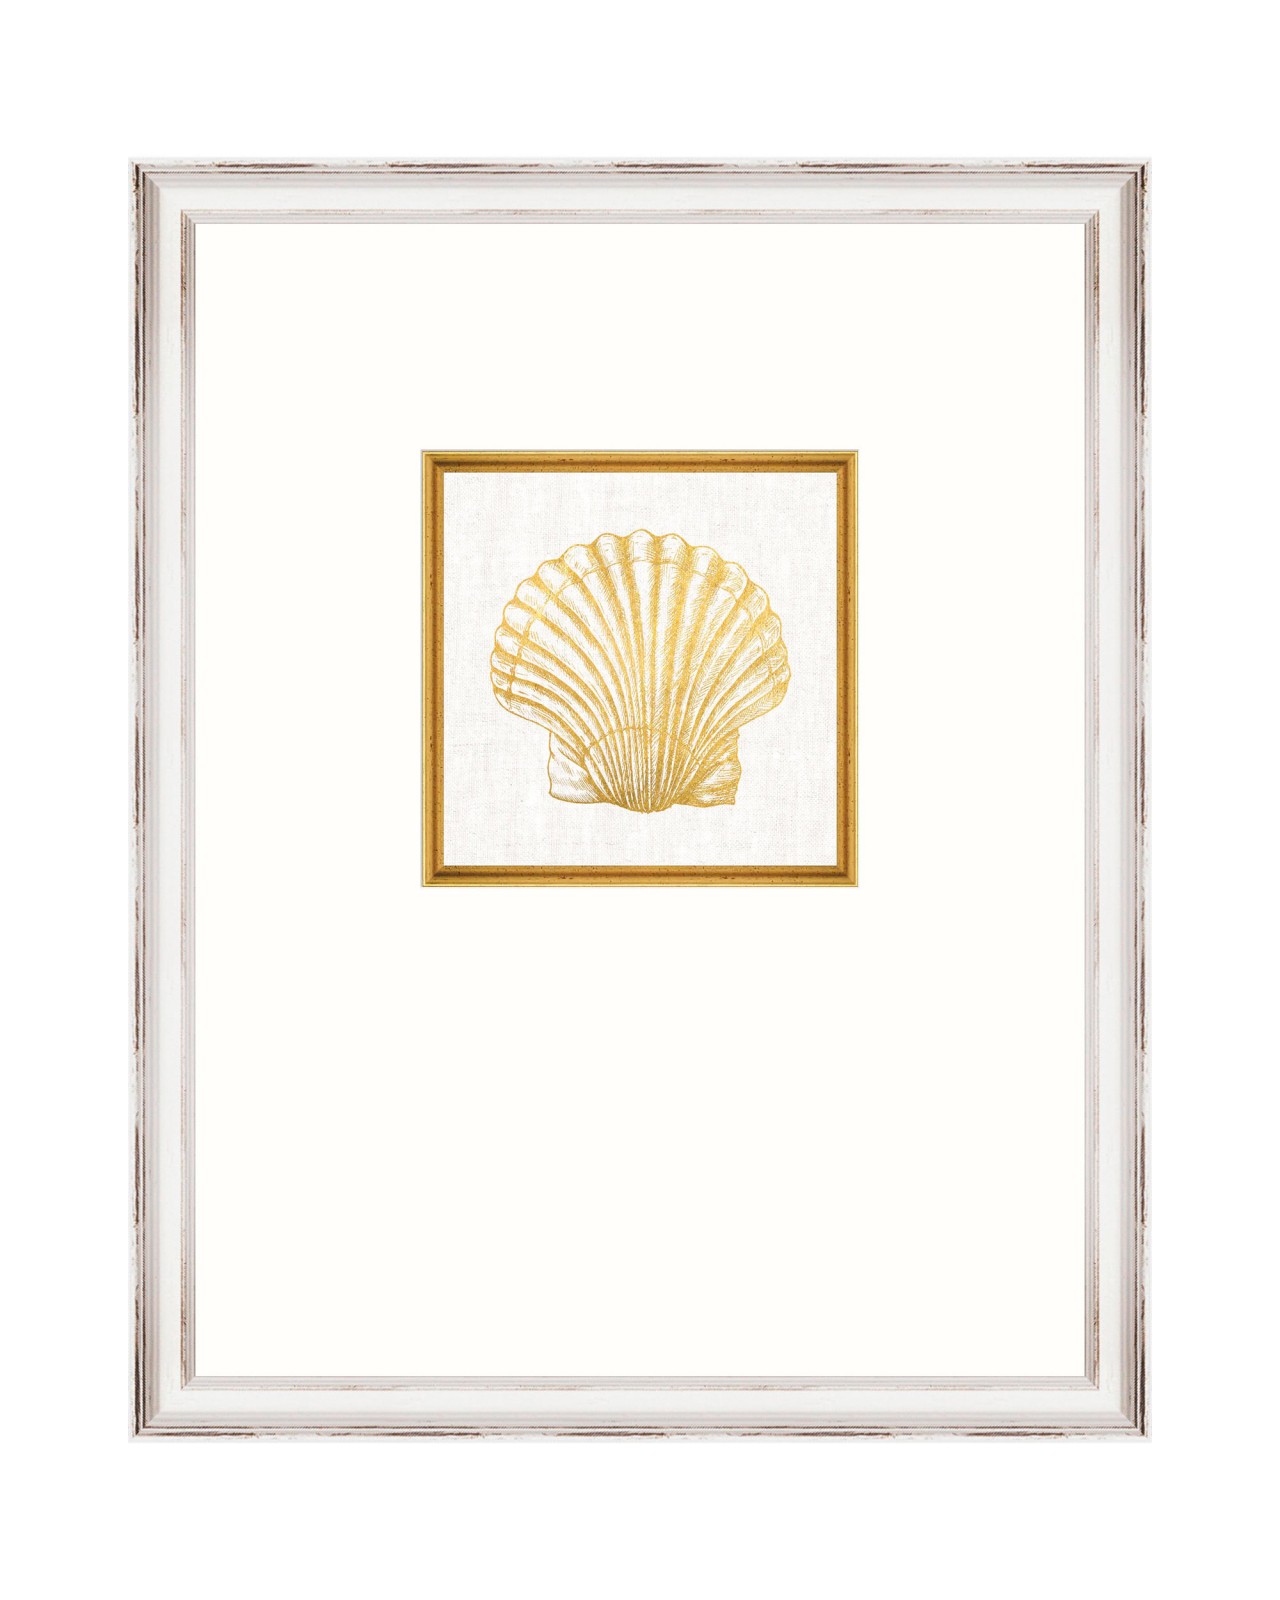 images/productimages/small/framed-linen-seashell-framed-art-35x45cm-fa13287.jpg